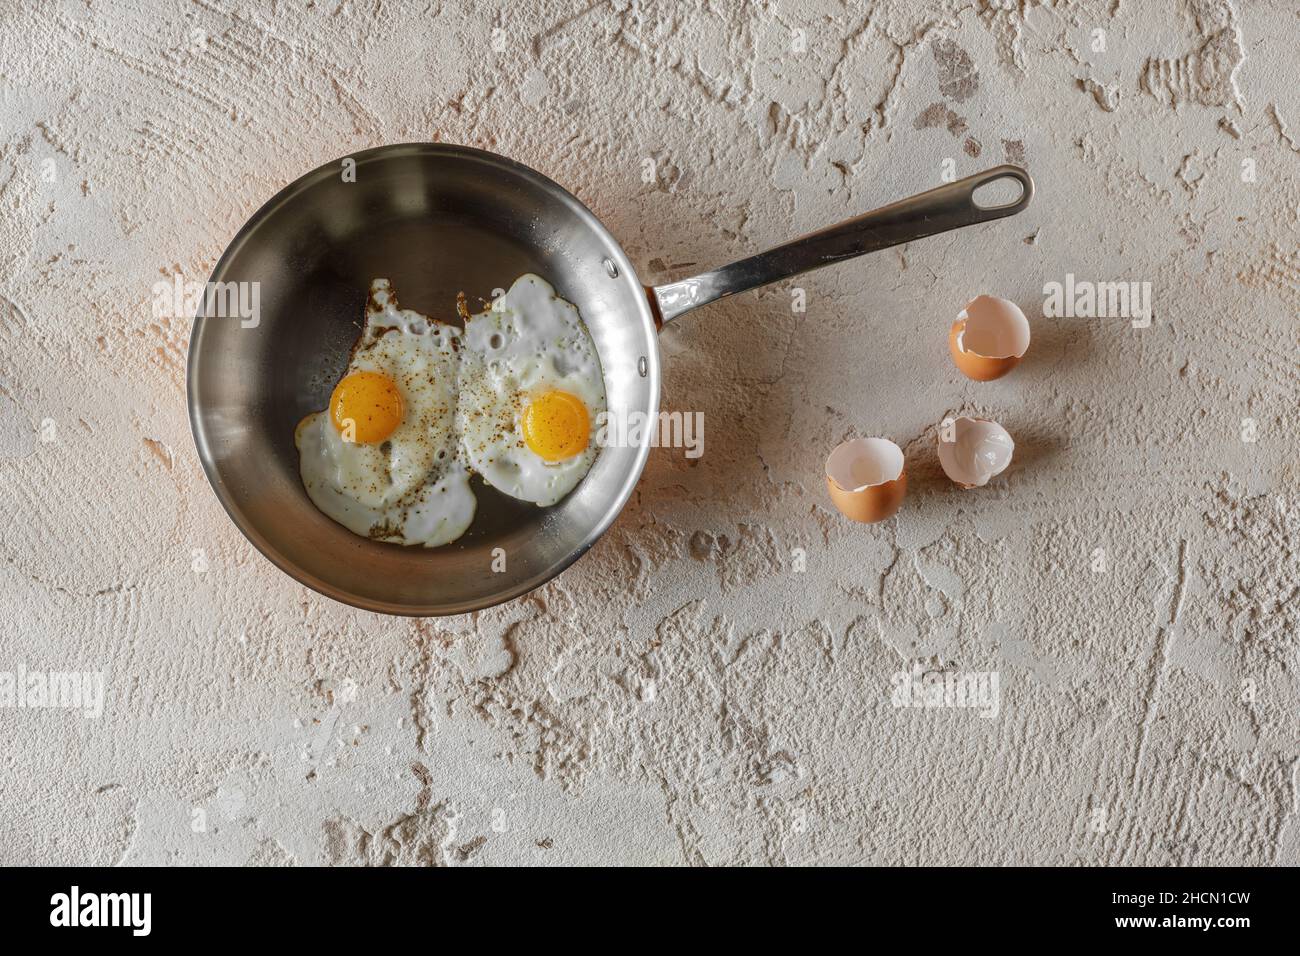 Frit deux œufs dans une casserole de cuivre sur fond d'argile rugueux et texturée.Concept de petit déjeuner sain. Banque D'Images